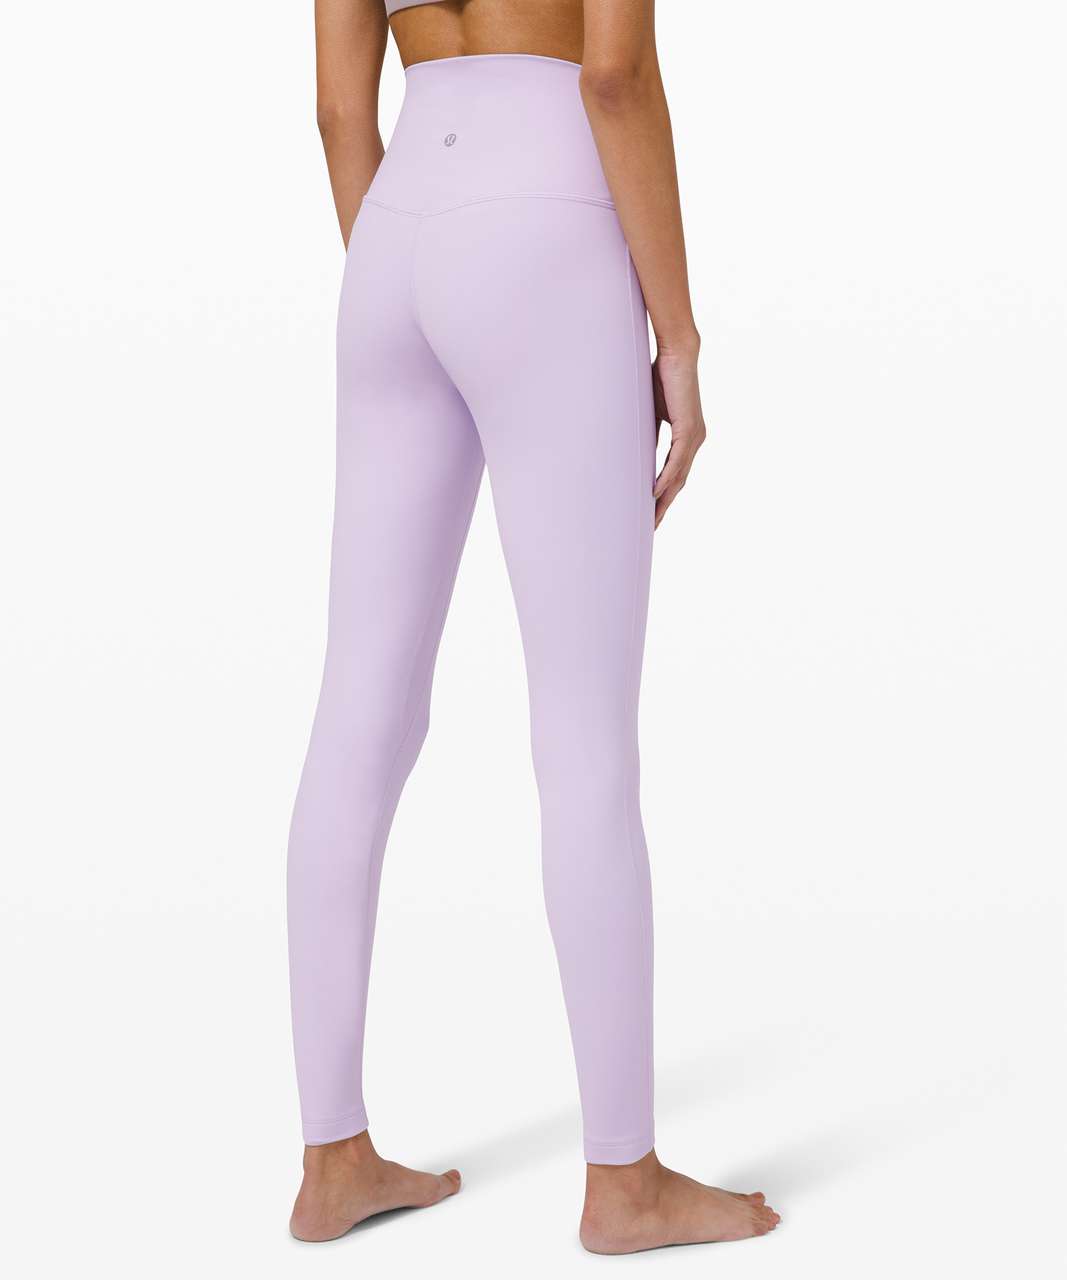 high-waisted, double lined lavender lululemon full length leggings